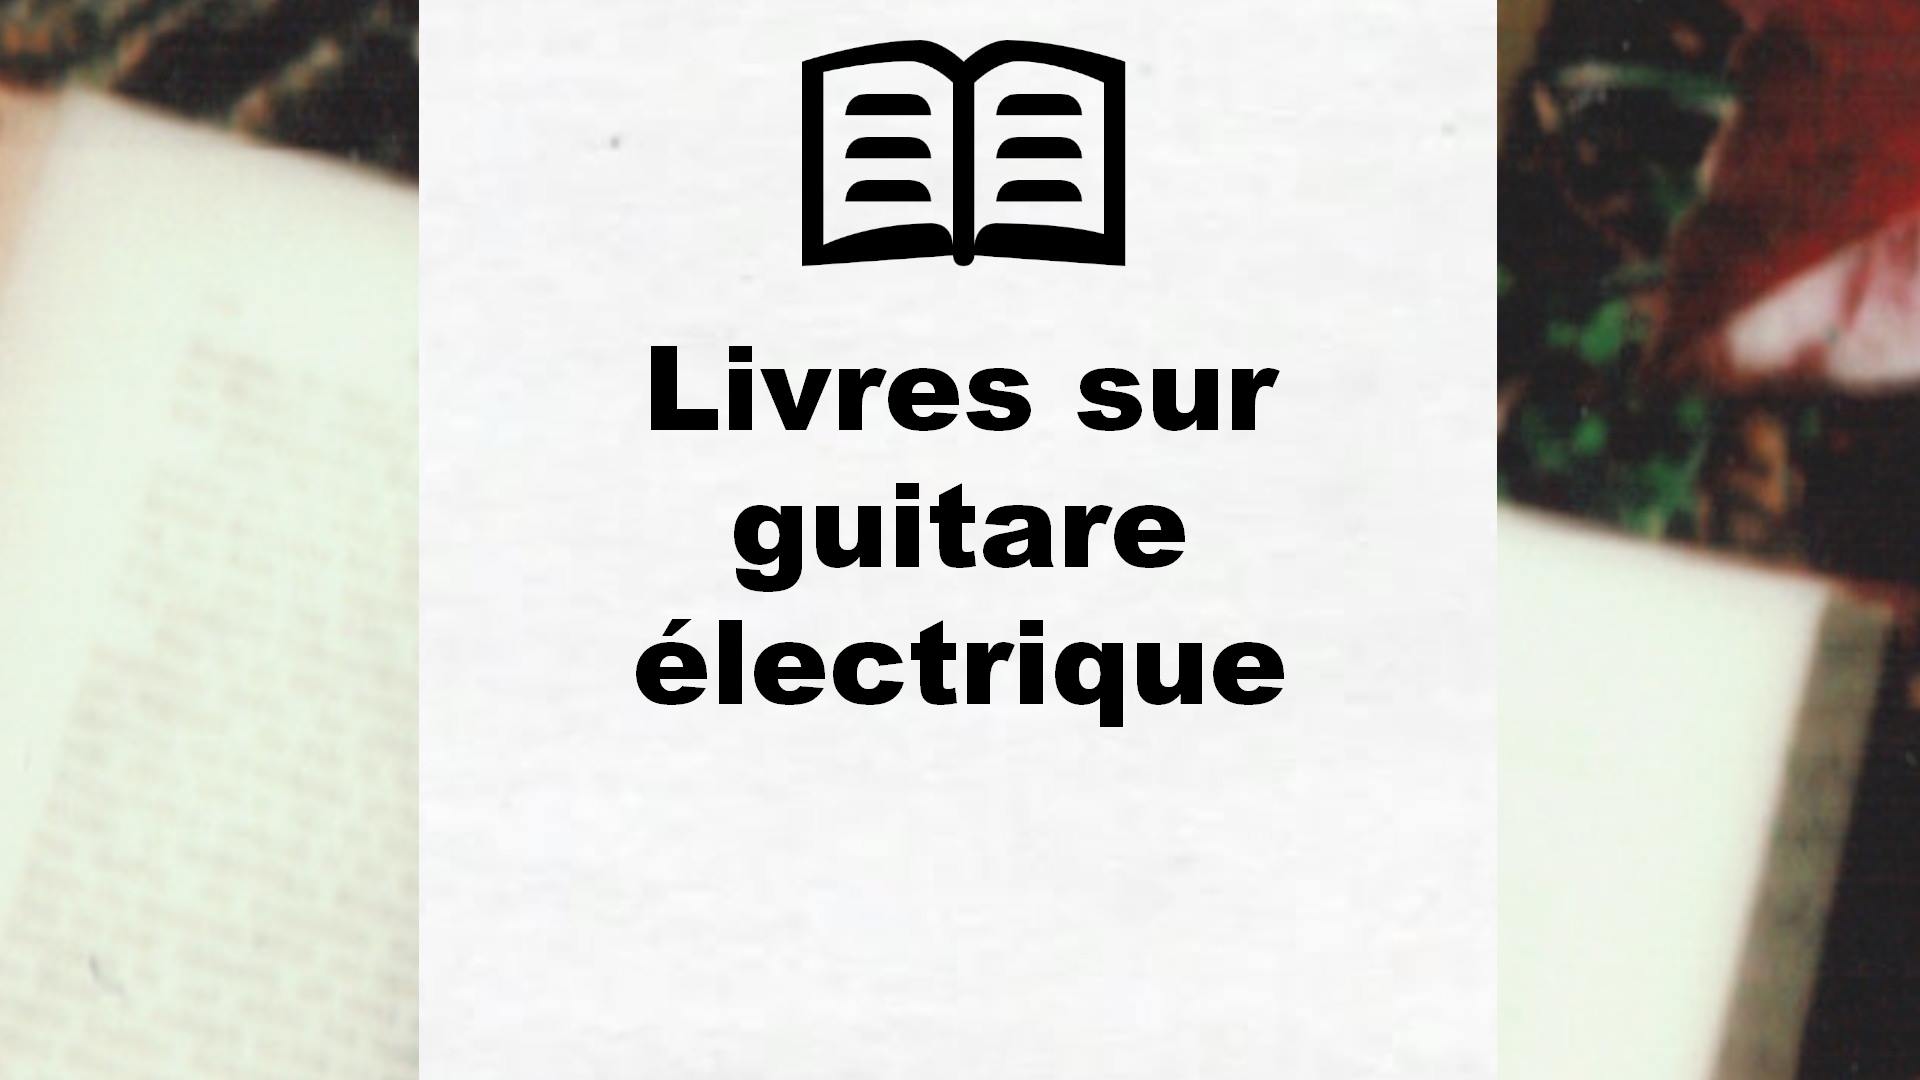 Livres sur guitare électrique